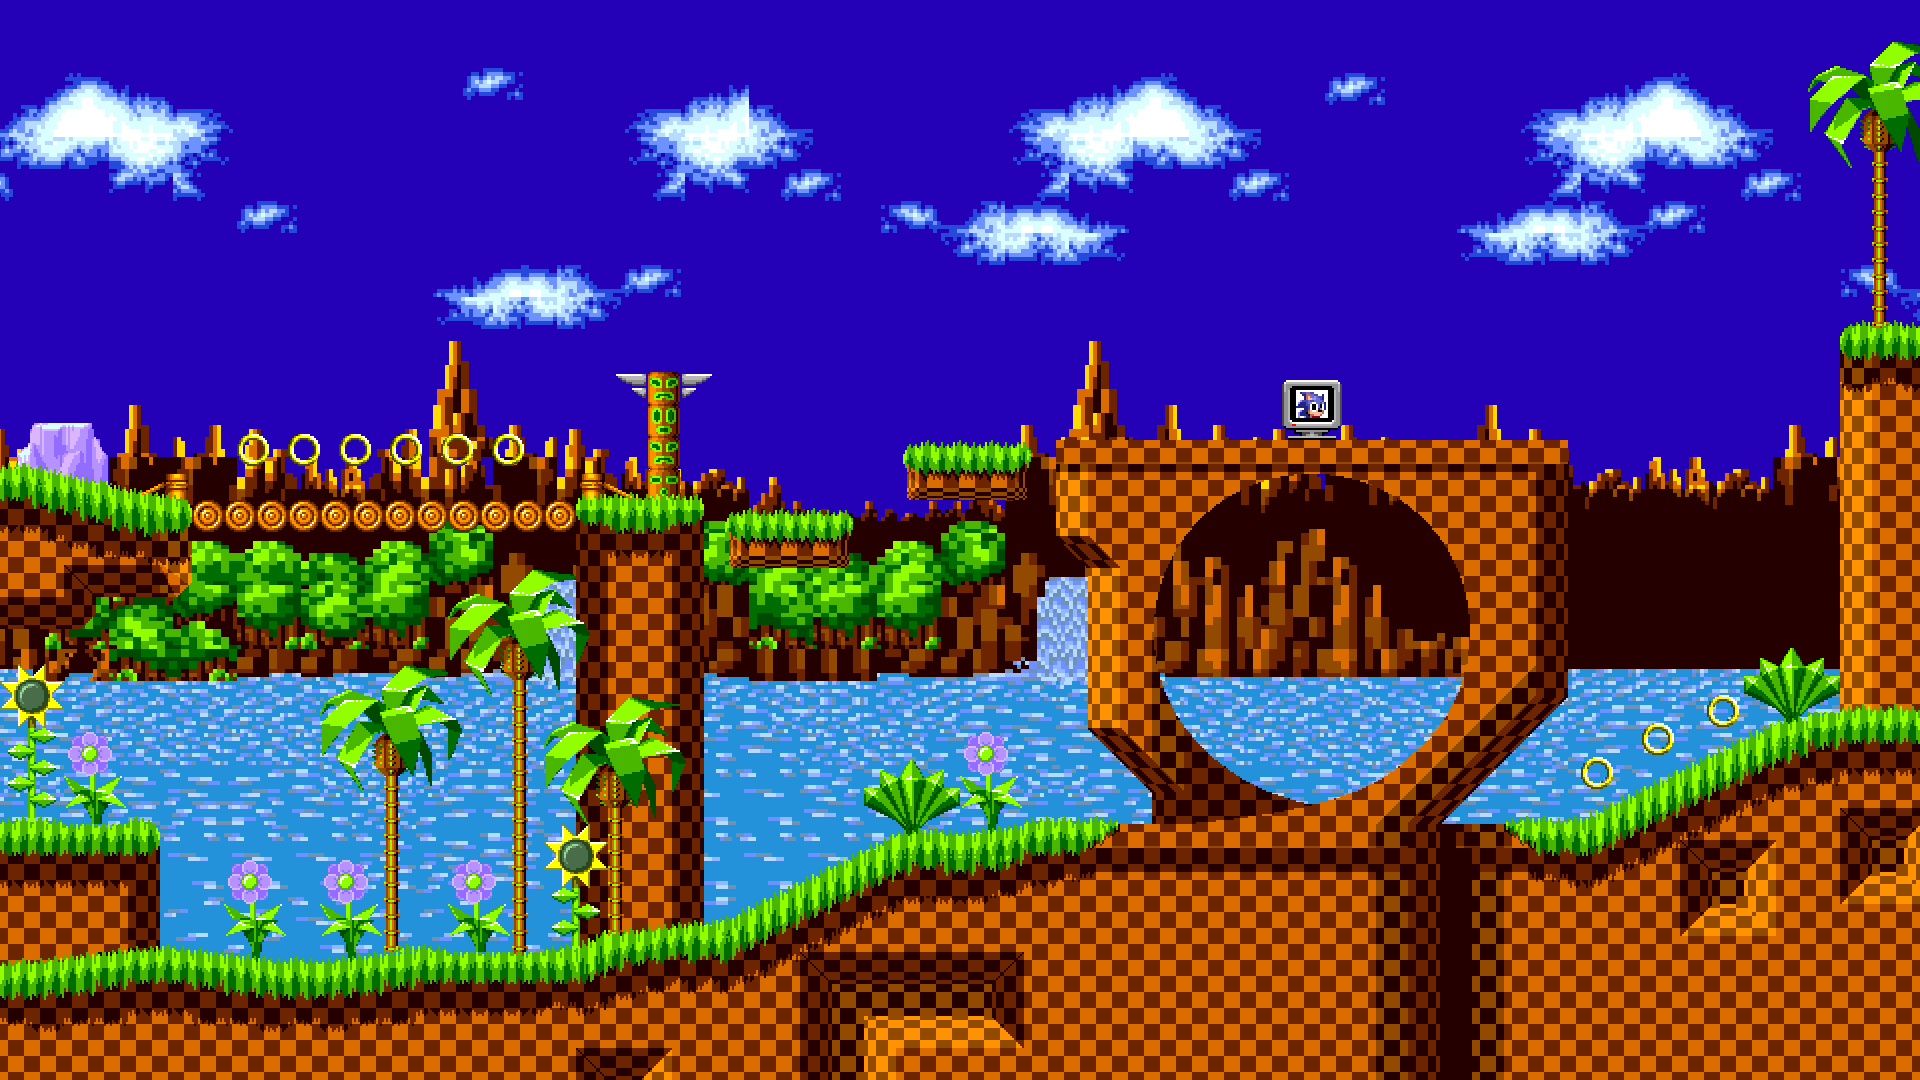 Đối với những người yêu thích game Sega và muốn tìm hiểu về lịch sử của trò chơi, họ sẽ không muốn bỏ lỡ cơ hội để chiêm ngưỡng hình ảnh liên quan đến khu vực Green Hill Zone này.